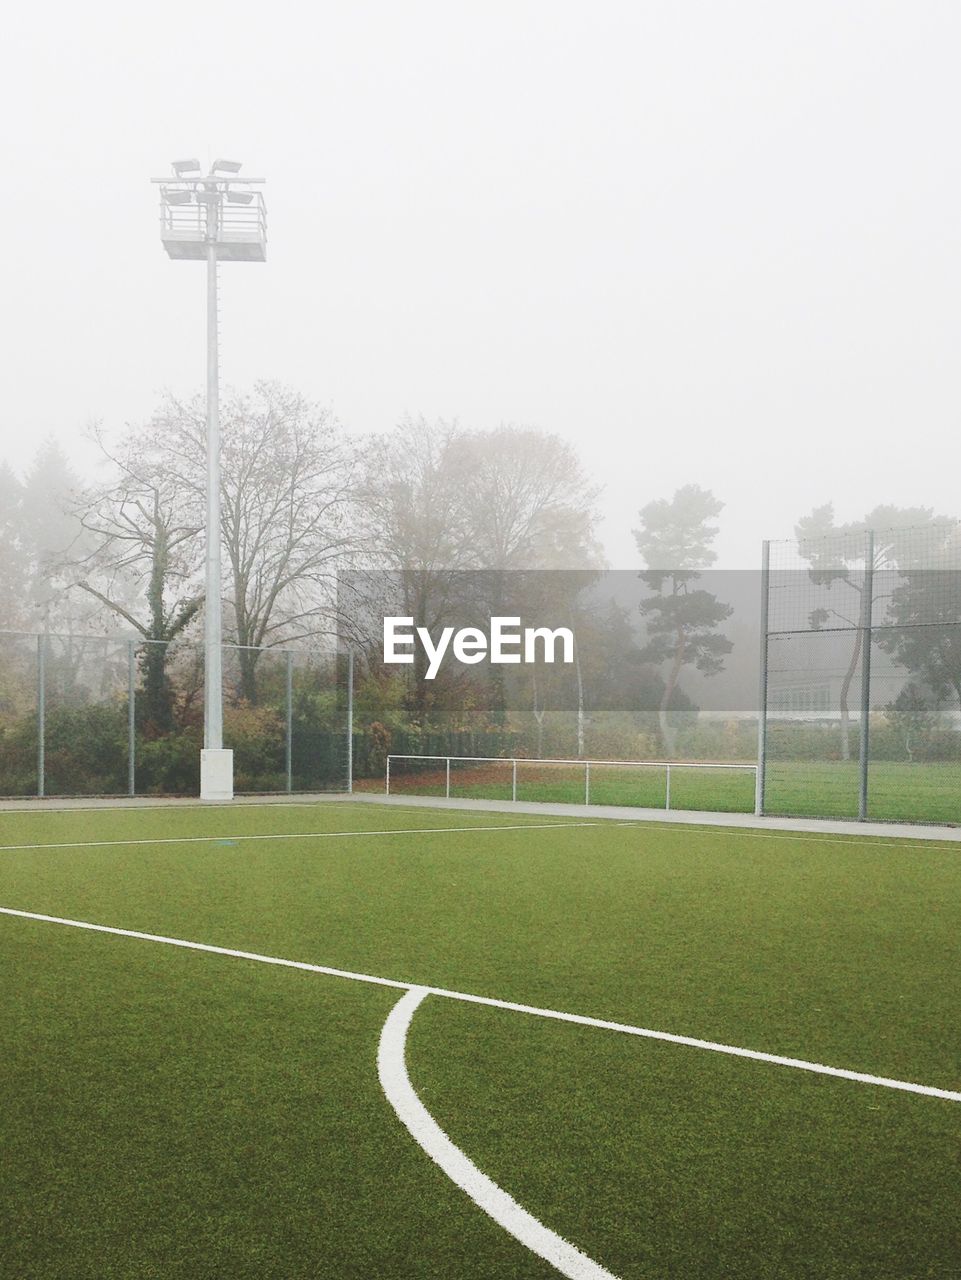 Soccer field against sky